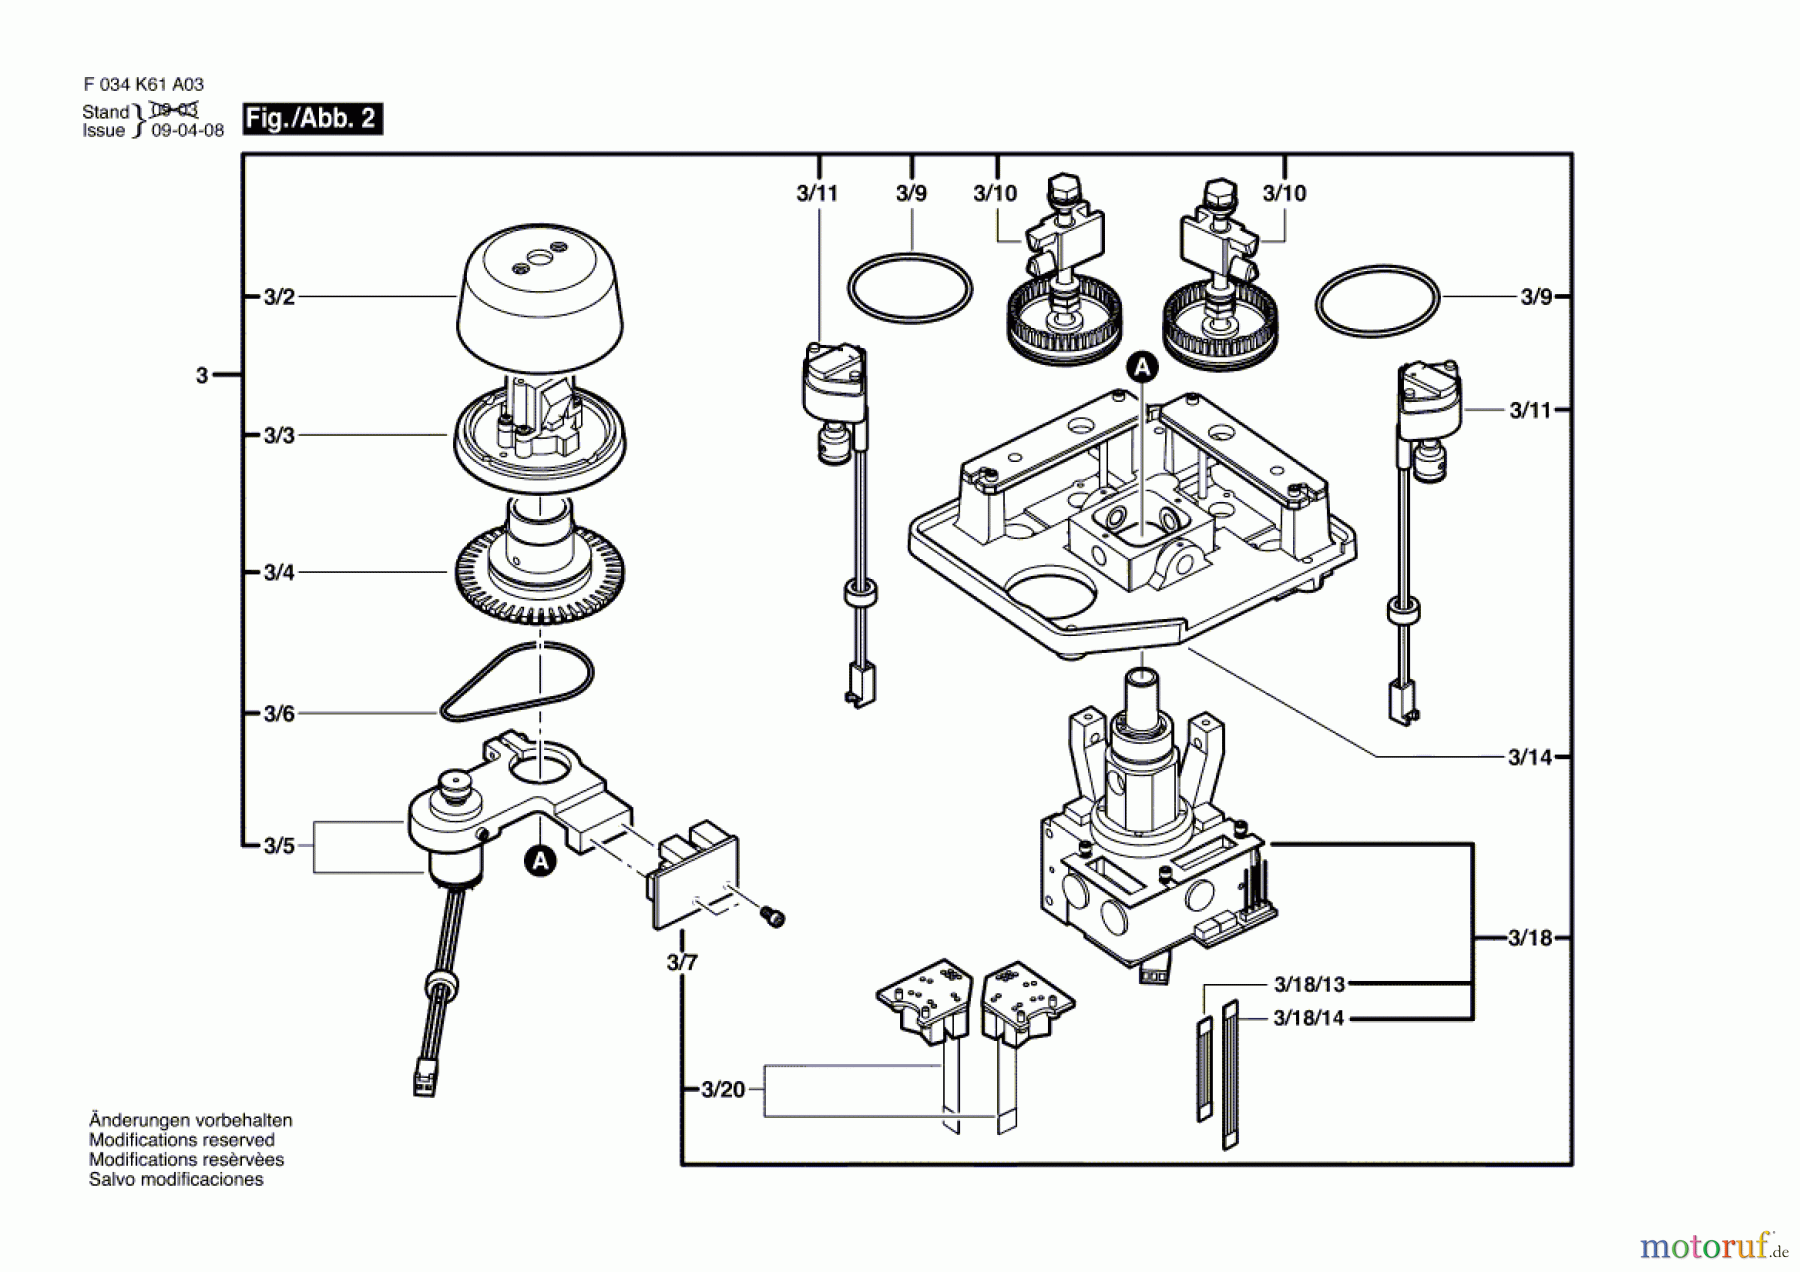  Bosch Werkzeug Laser ALGR Seite 2